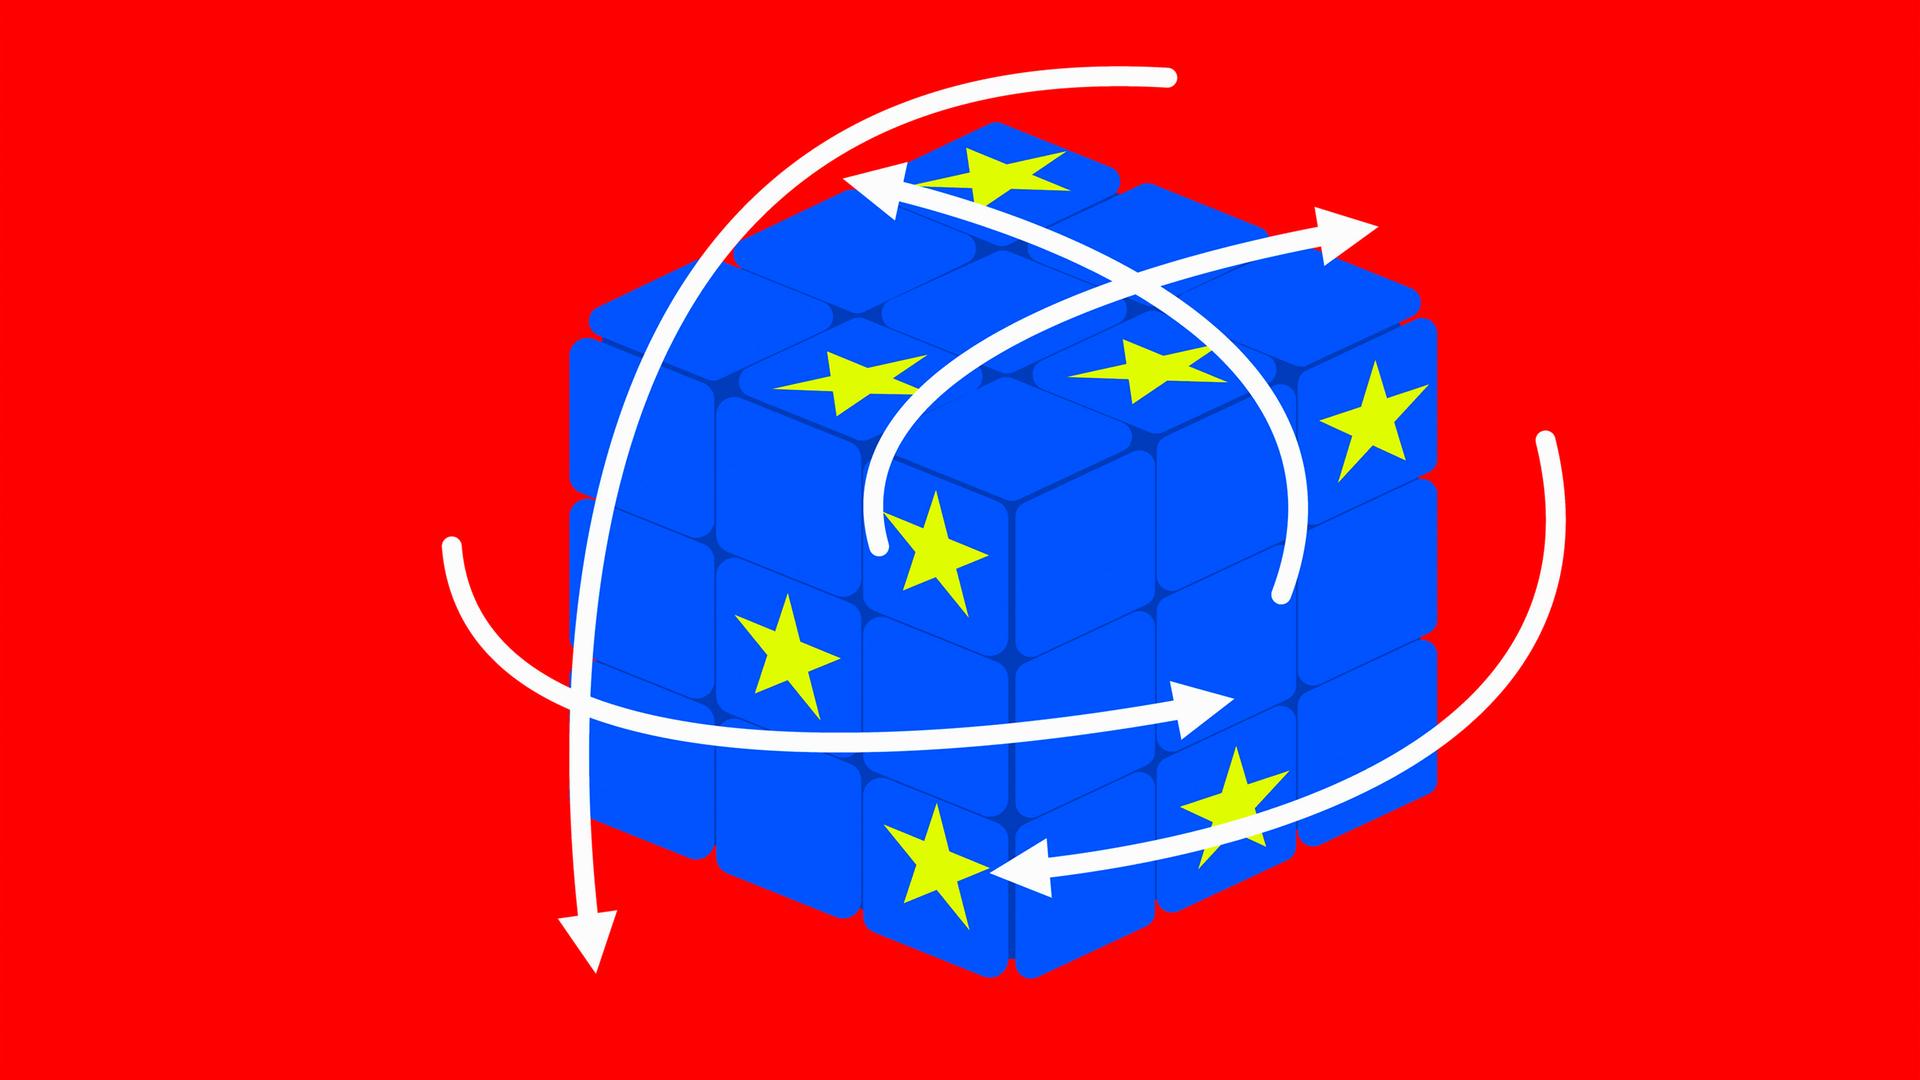 Illustration: Ein blauber Zauberwürfel mit den gelben Sternen der Europäischen Union.